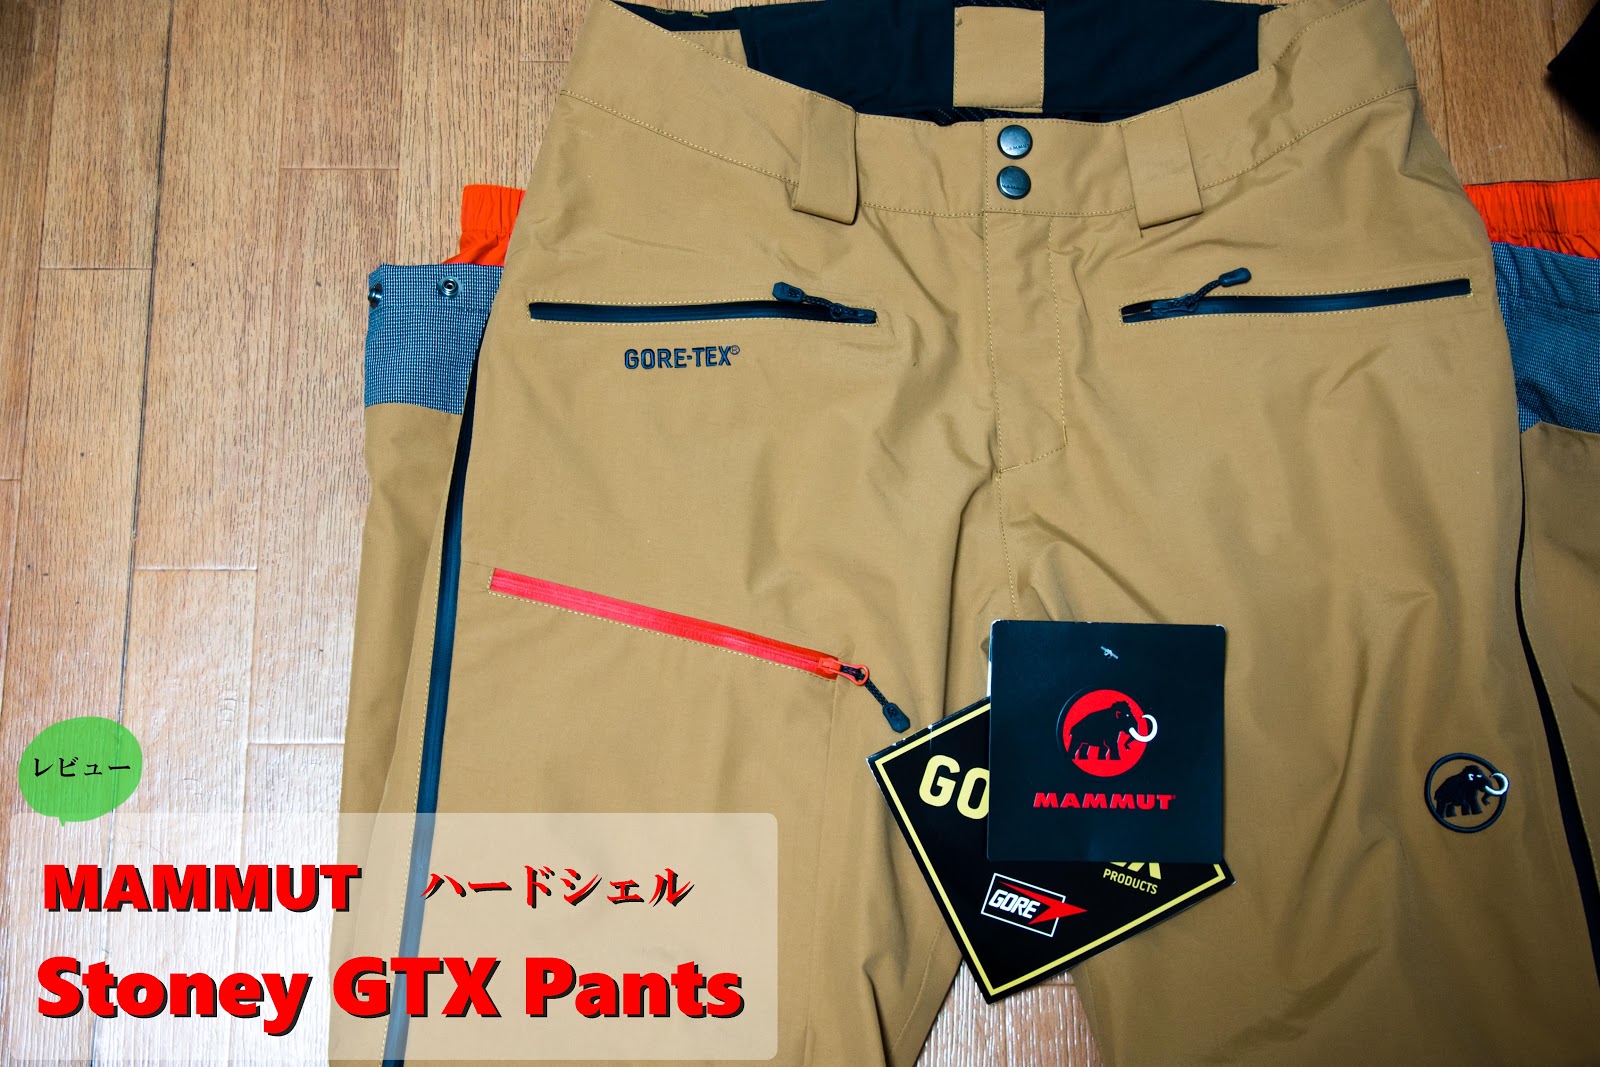 1/f ゆらぎ: マムート Stoney GTX Pants (MAMMUT ハードシェル パンツ) レビュー